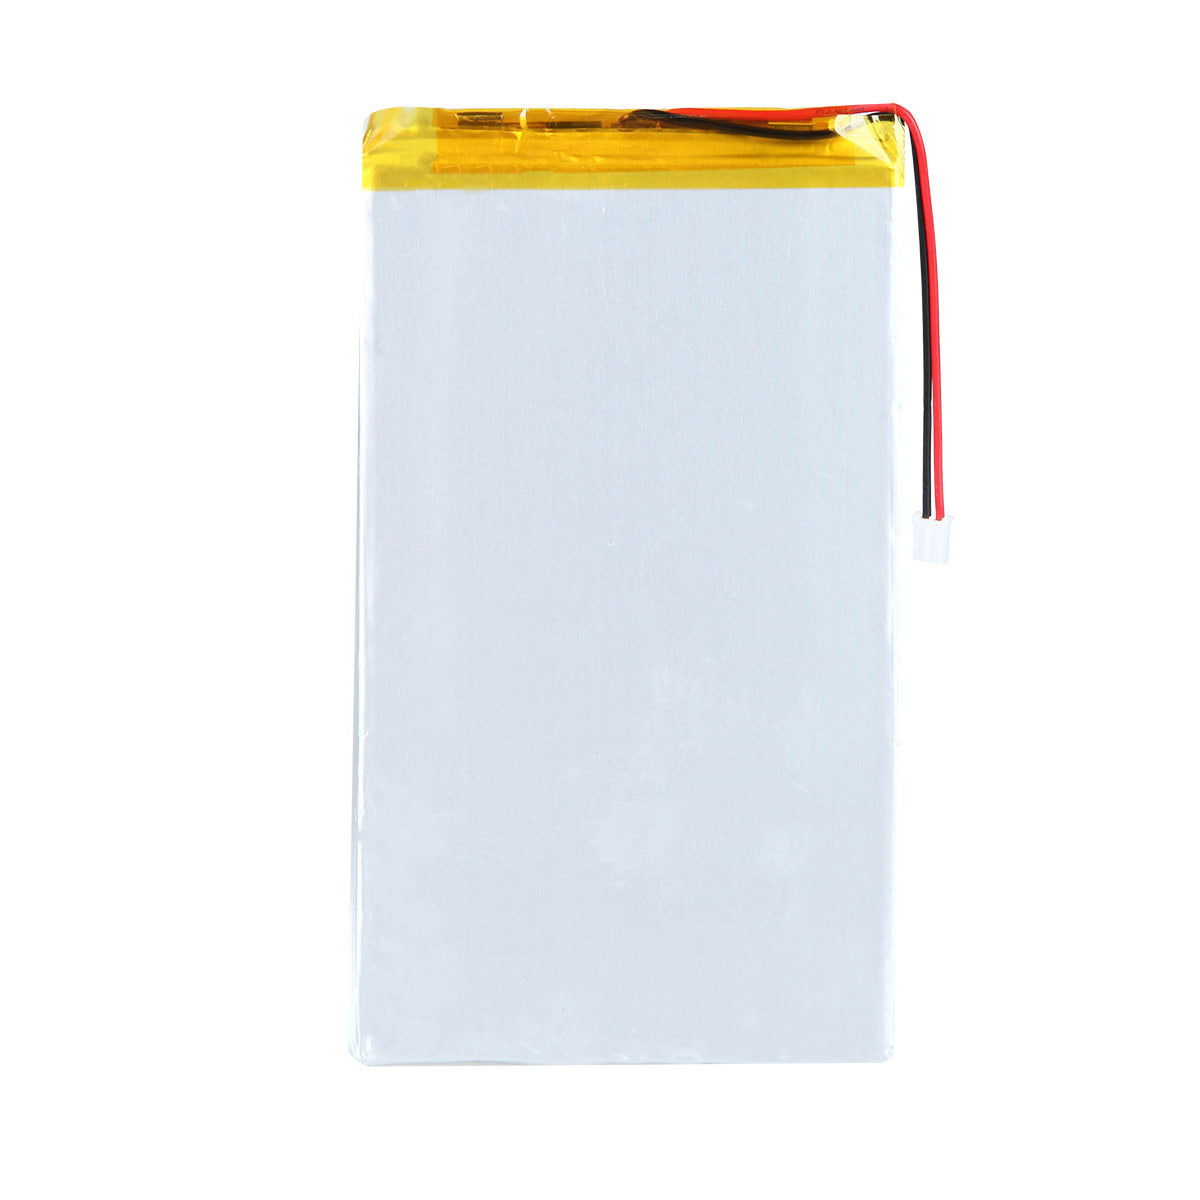 3.7V 4000mAh 3377128 Batterie lithium-polymère rechargeable Longueur 1